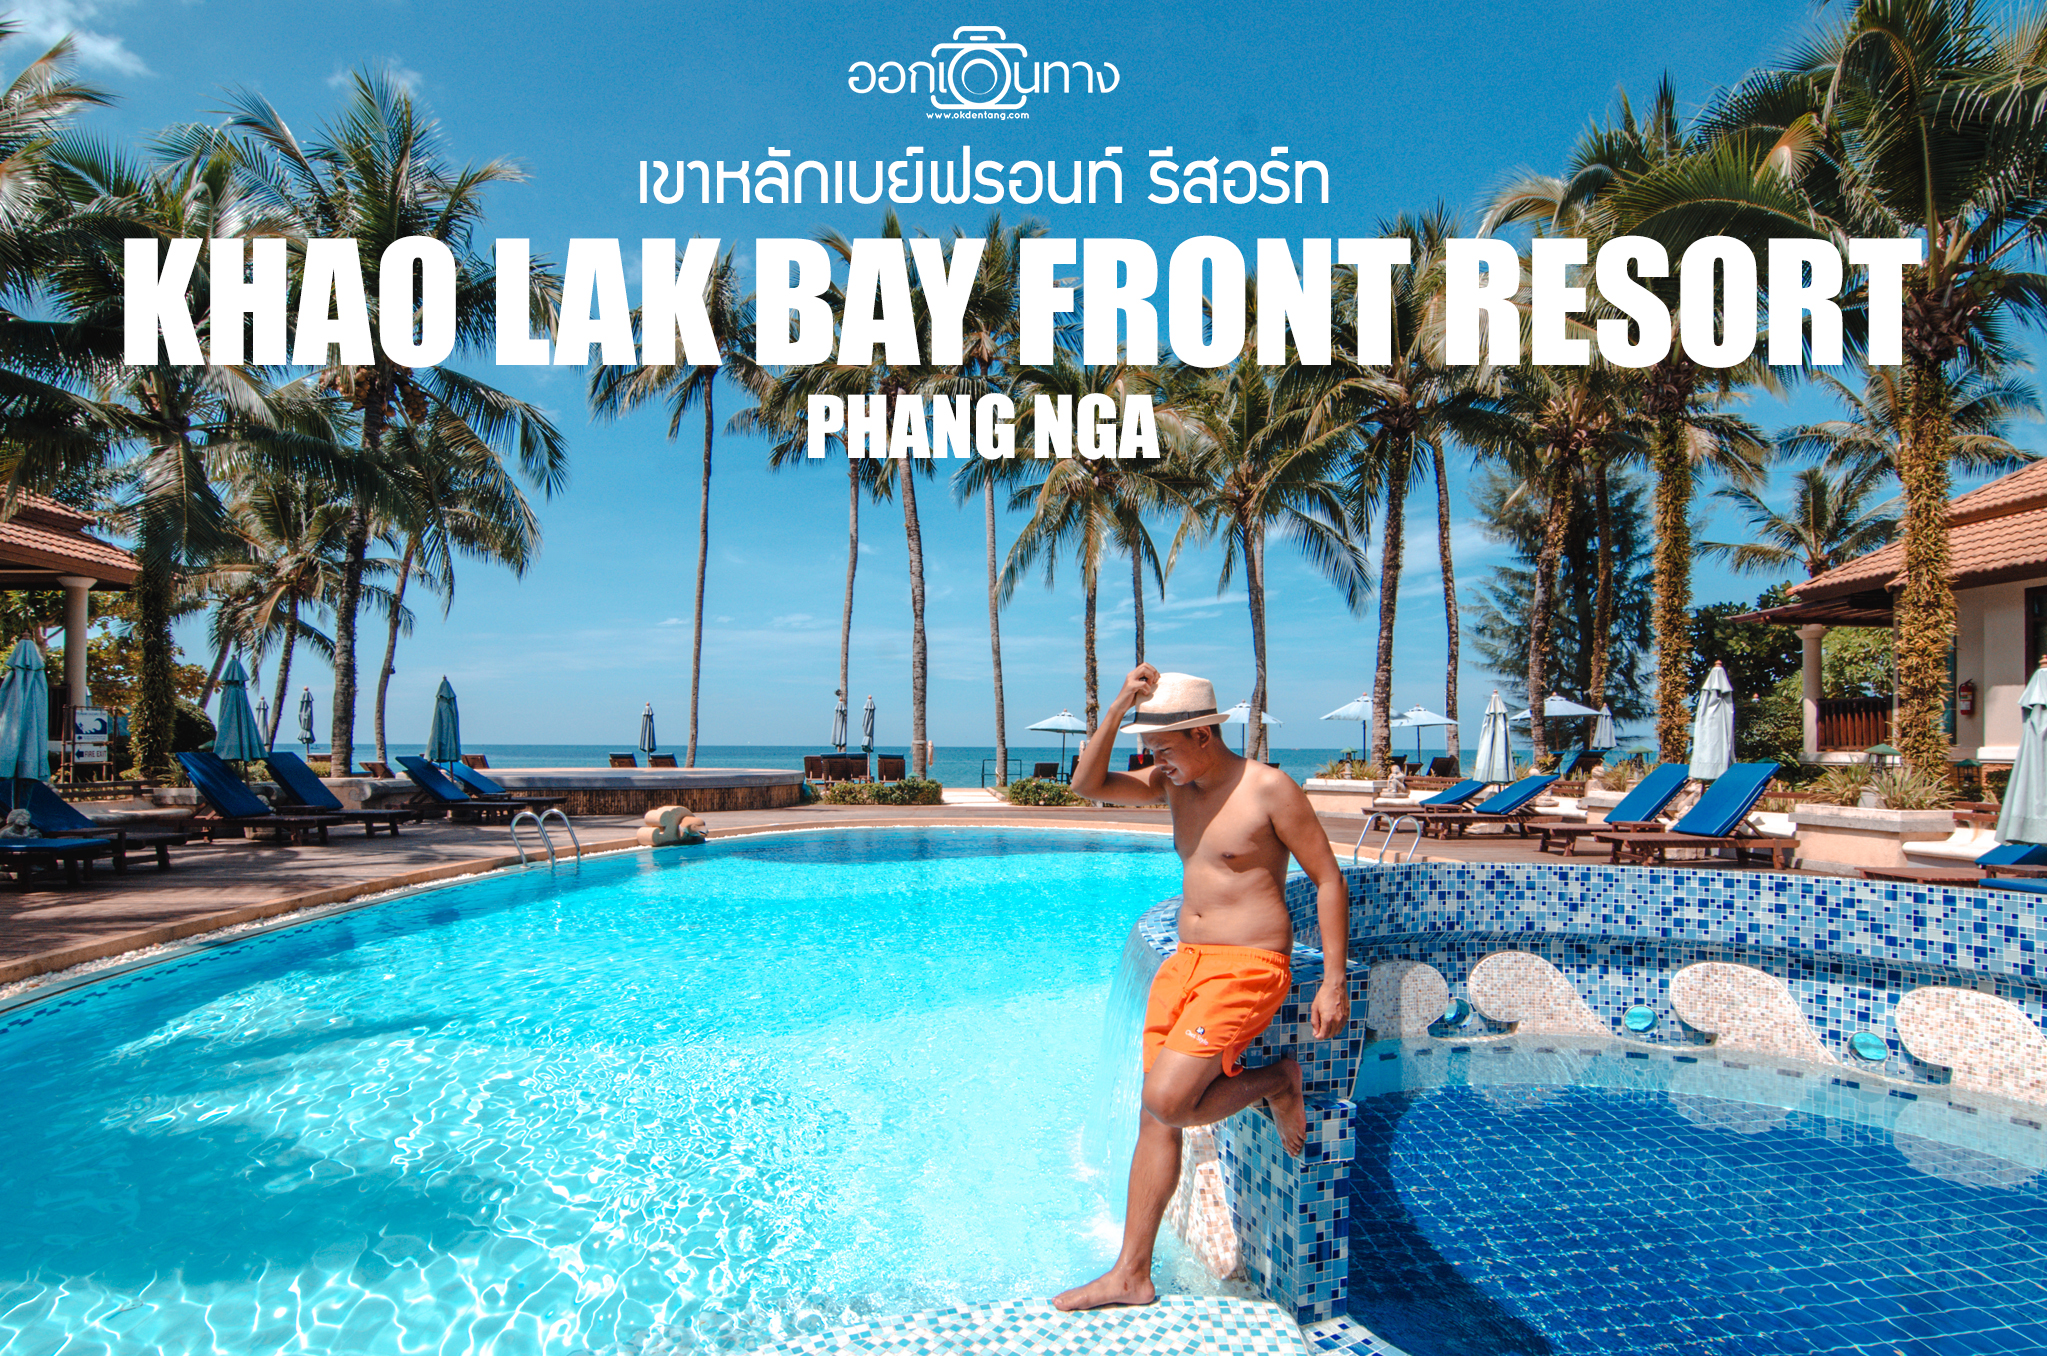 รีวิวที่พักเขาหลัก | เขาหลักเบย์ฟรอนท์ รีสอร์ท [Khao Lak Bay Front Resort]  | ออกเดินทาง | ออกเดินทาง | Shared travels story and lifestyle